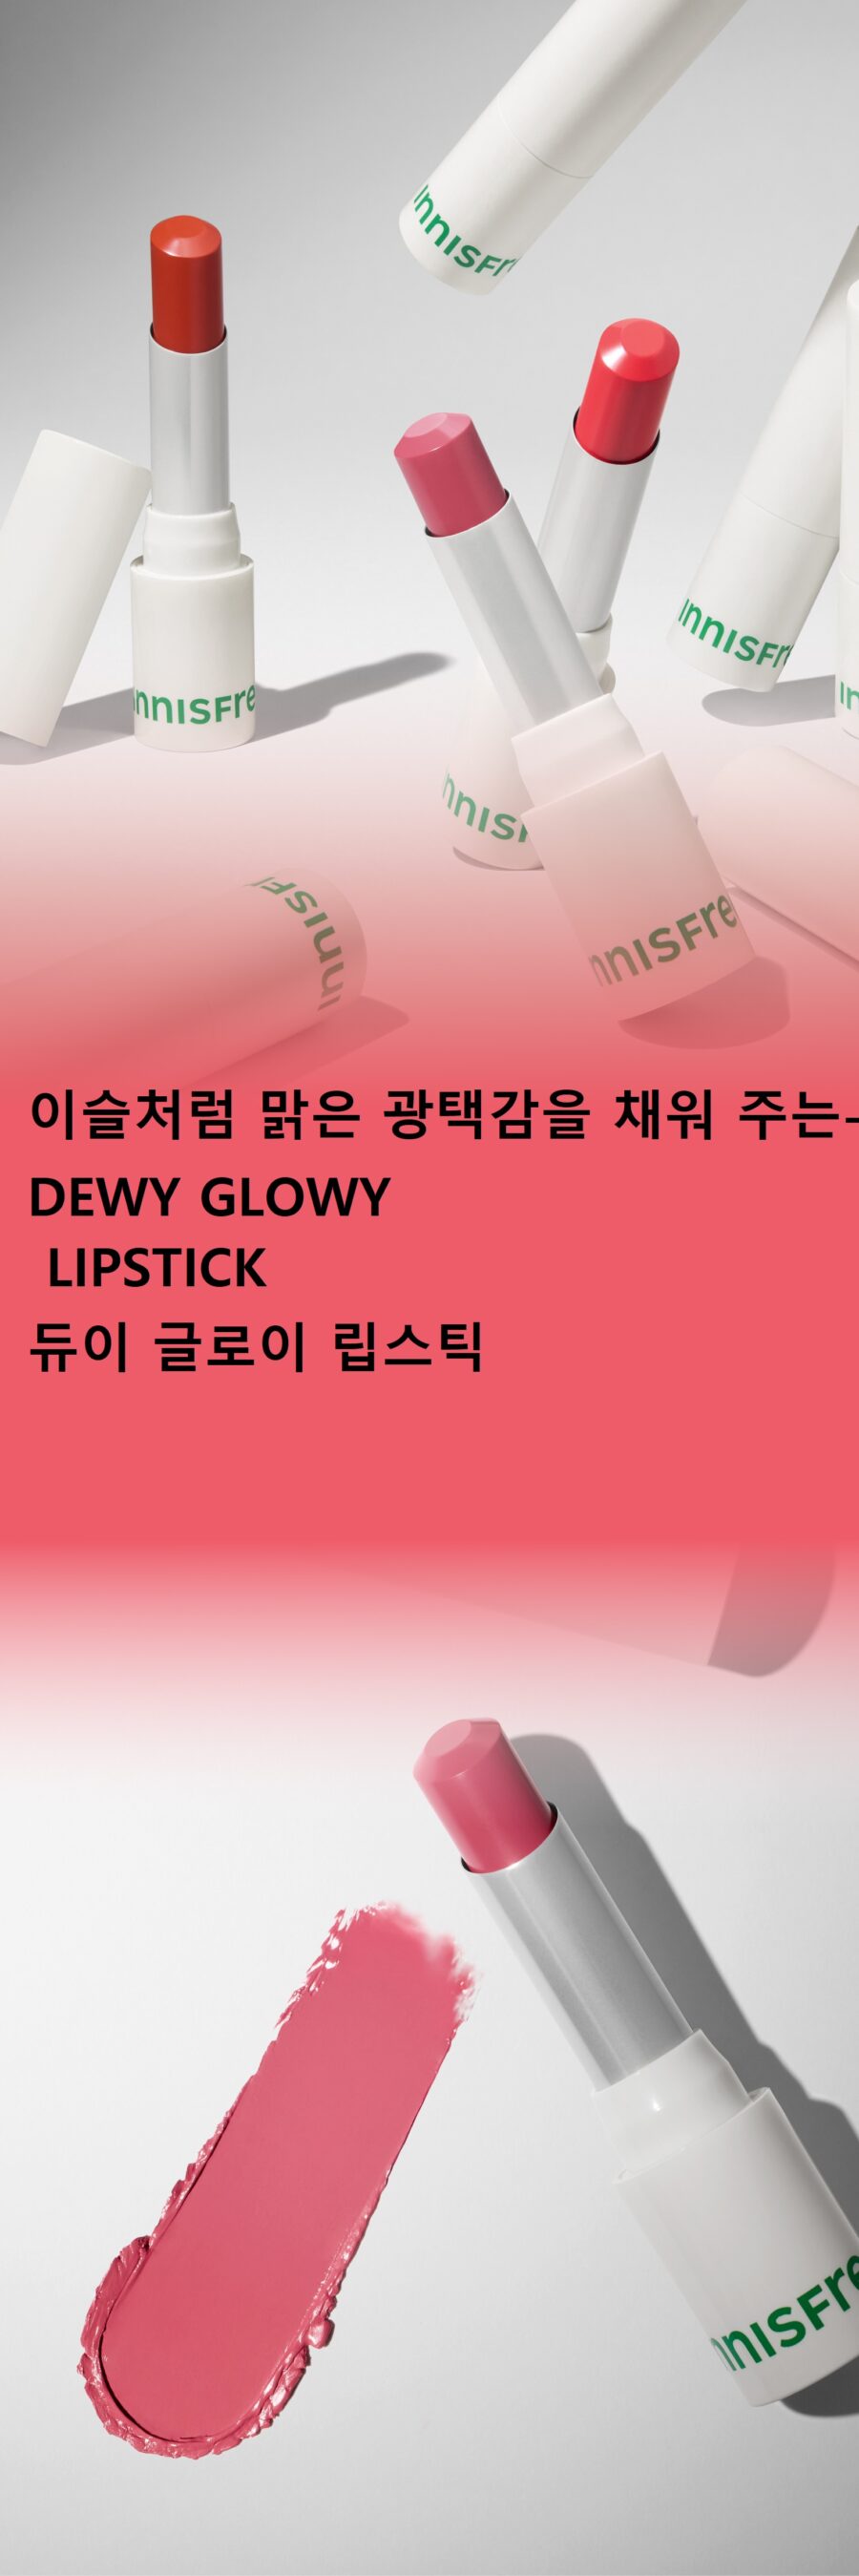 Innisfree Dewy Glowy Lipstick korean skincare product online shop malaysia mexico poland1